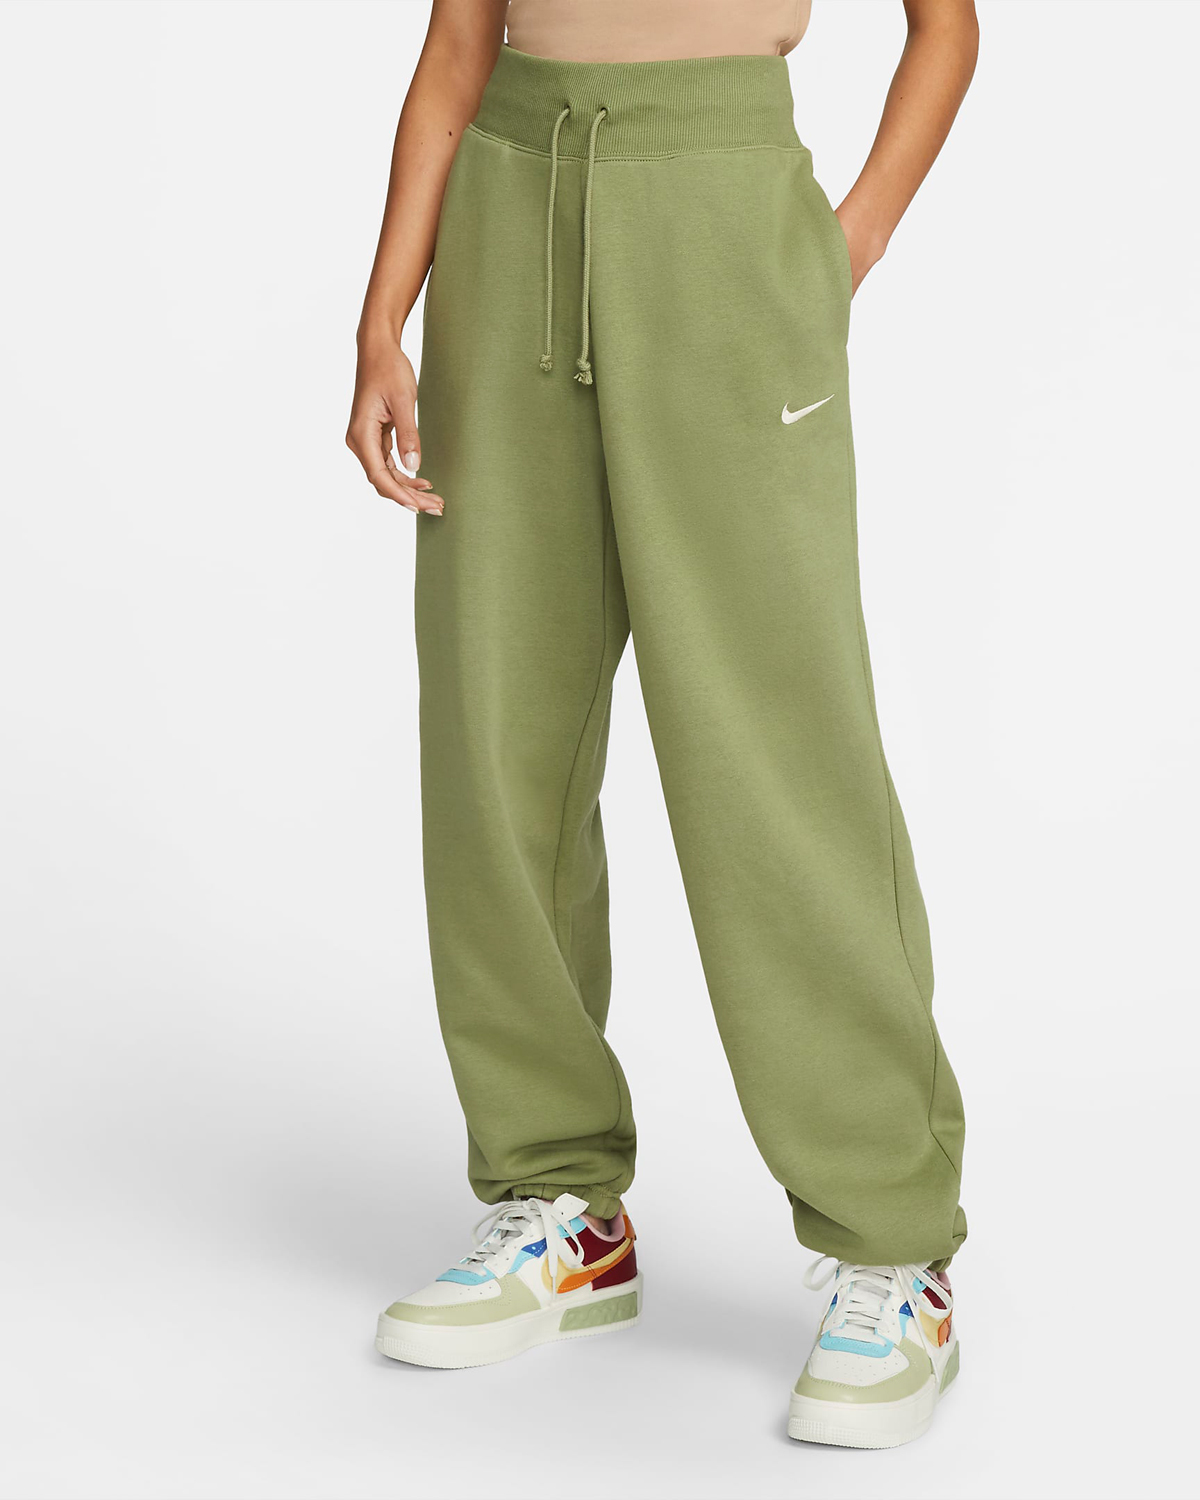 Nike-Sportswear-Phoenix-Womens-Sweatpants-Alligator-Green